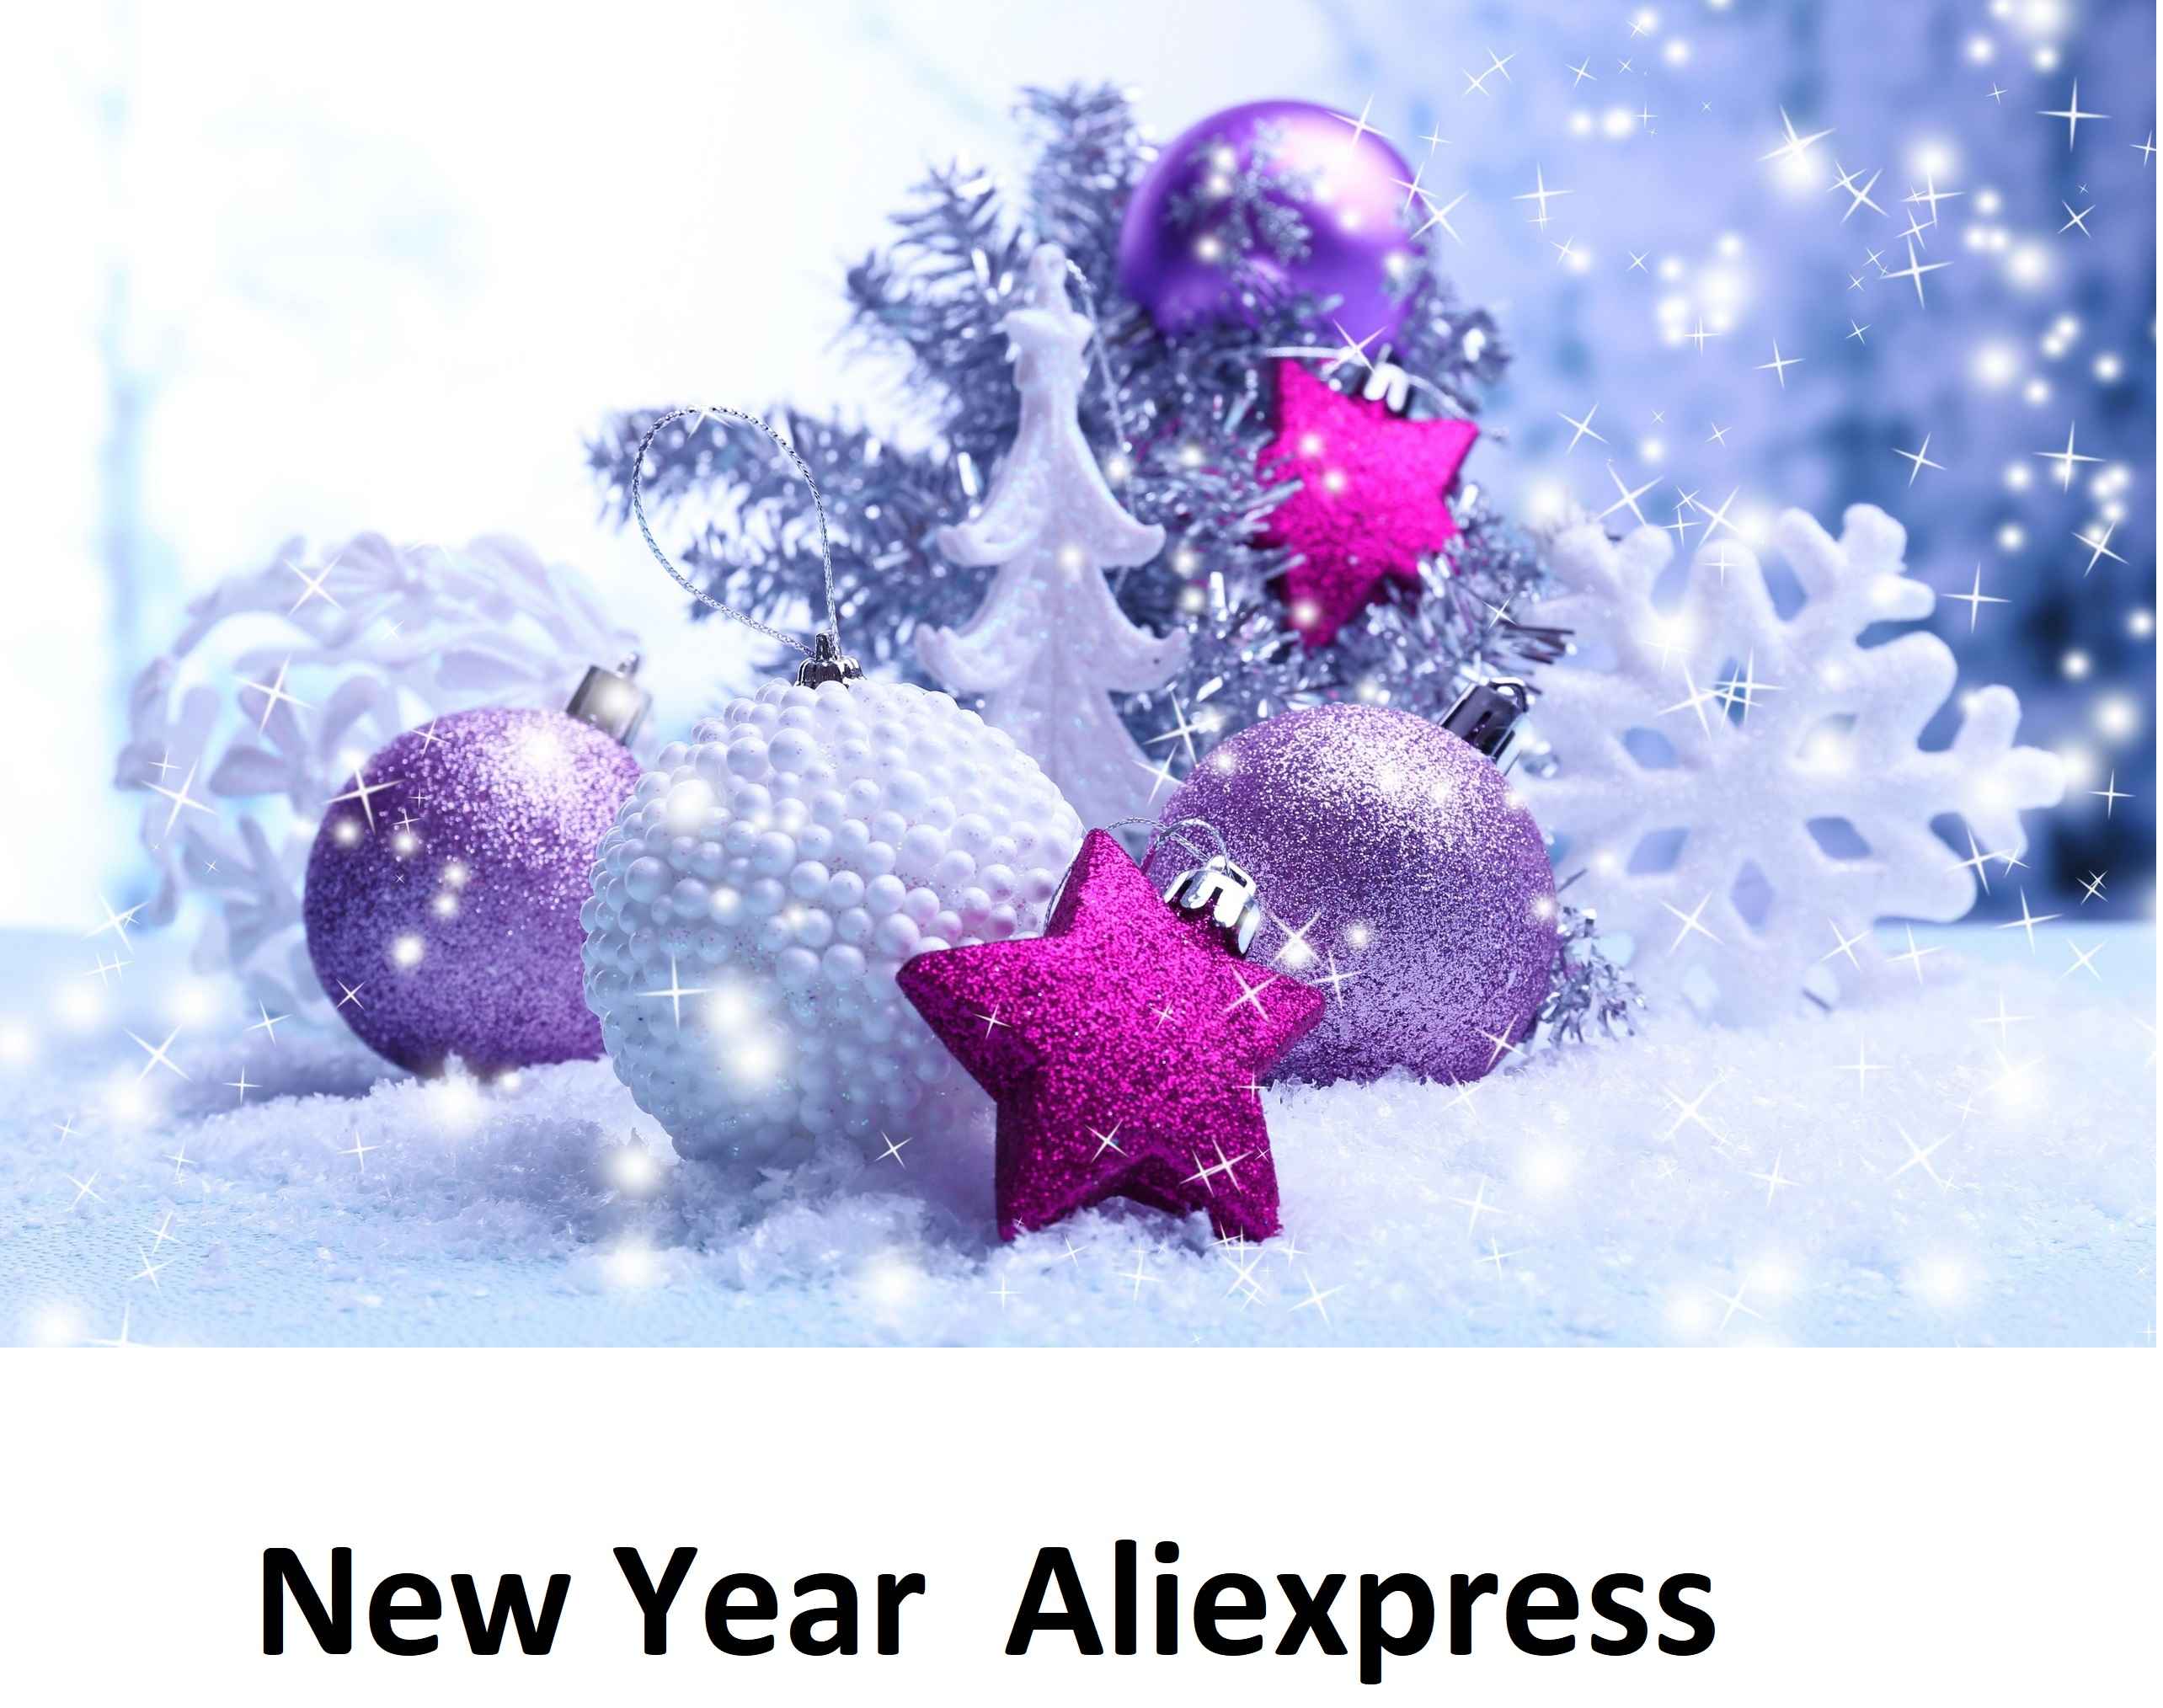 Что подарить на новый год с Алиэкспресс 2018-2019 хорошего и нужного